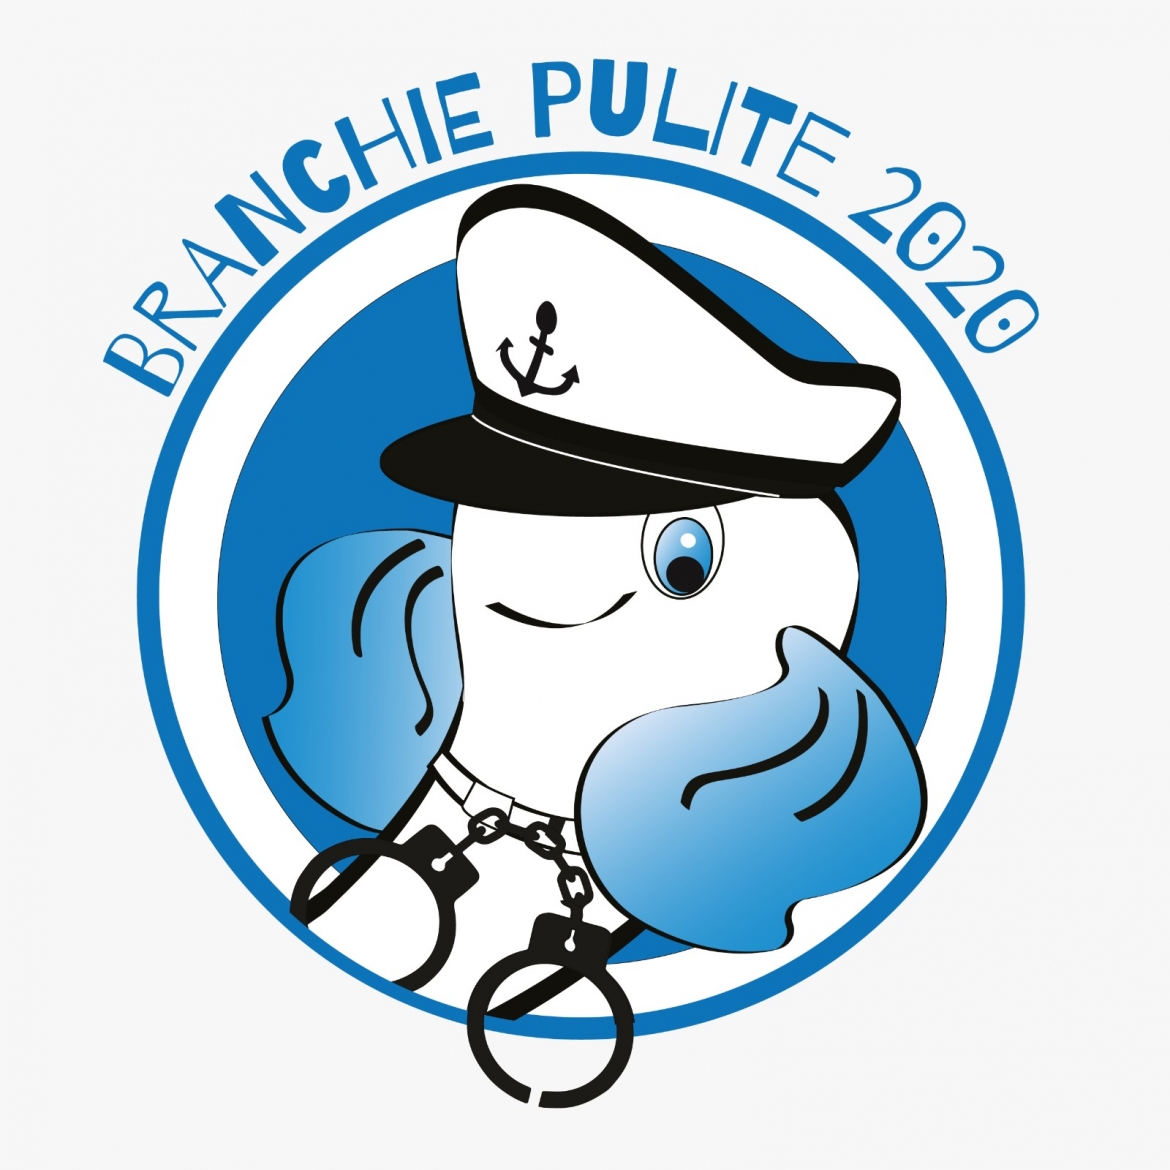 Branchie Pulite 2020